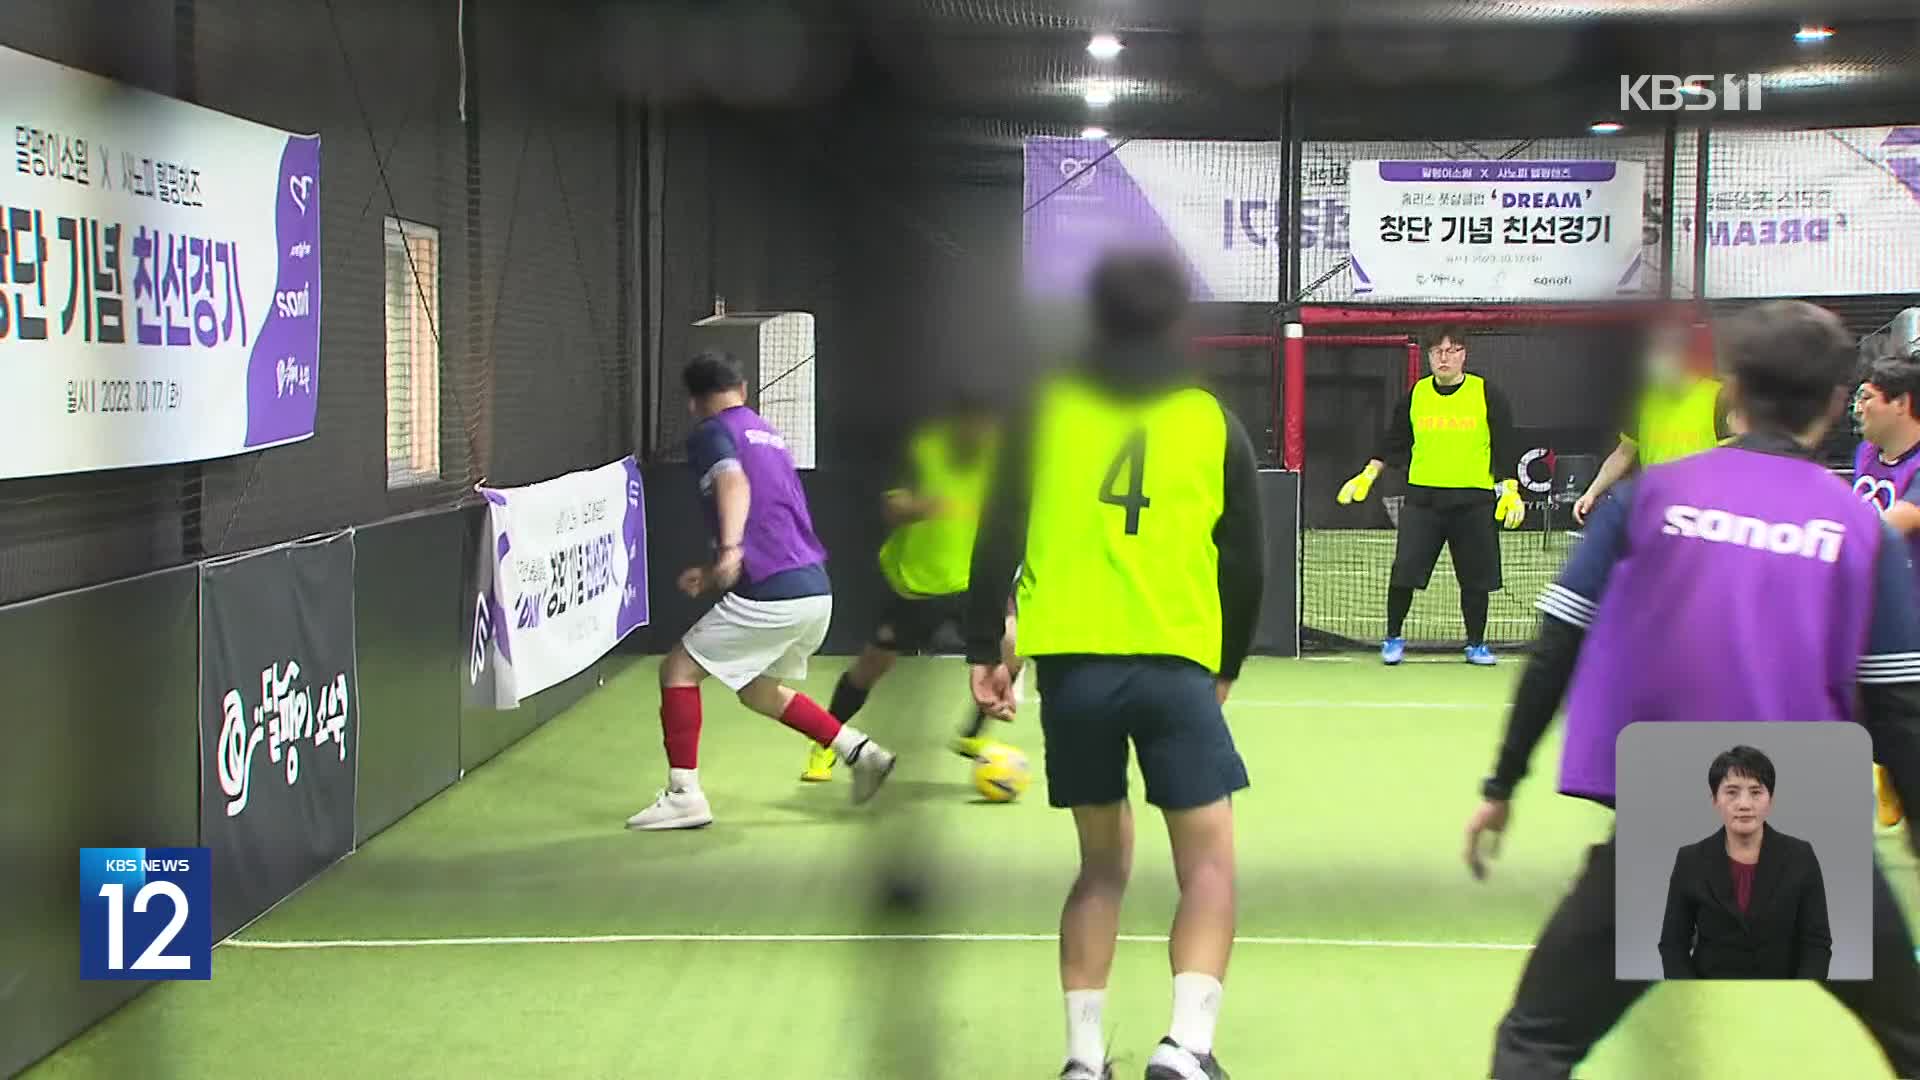 ‘축구가 쏘아올린 희망’, 노숙인 건강·자활의지 향상시켜